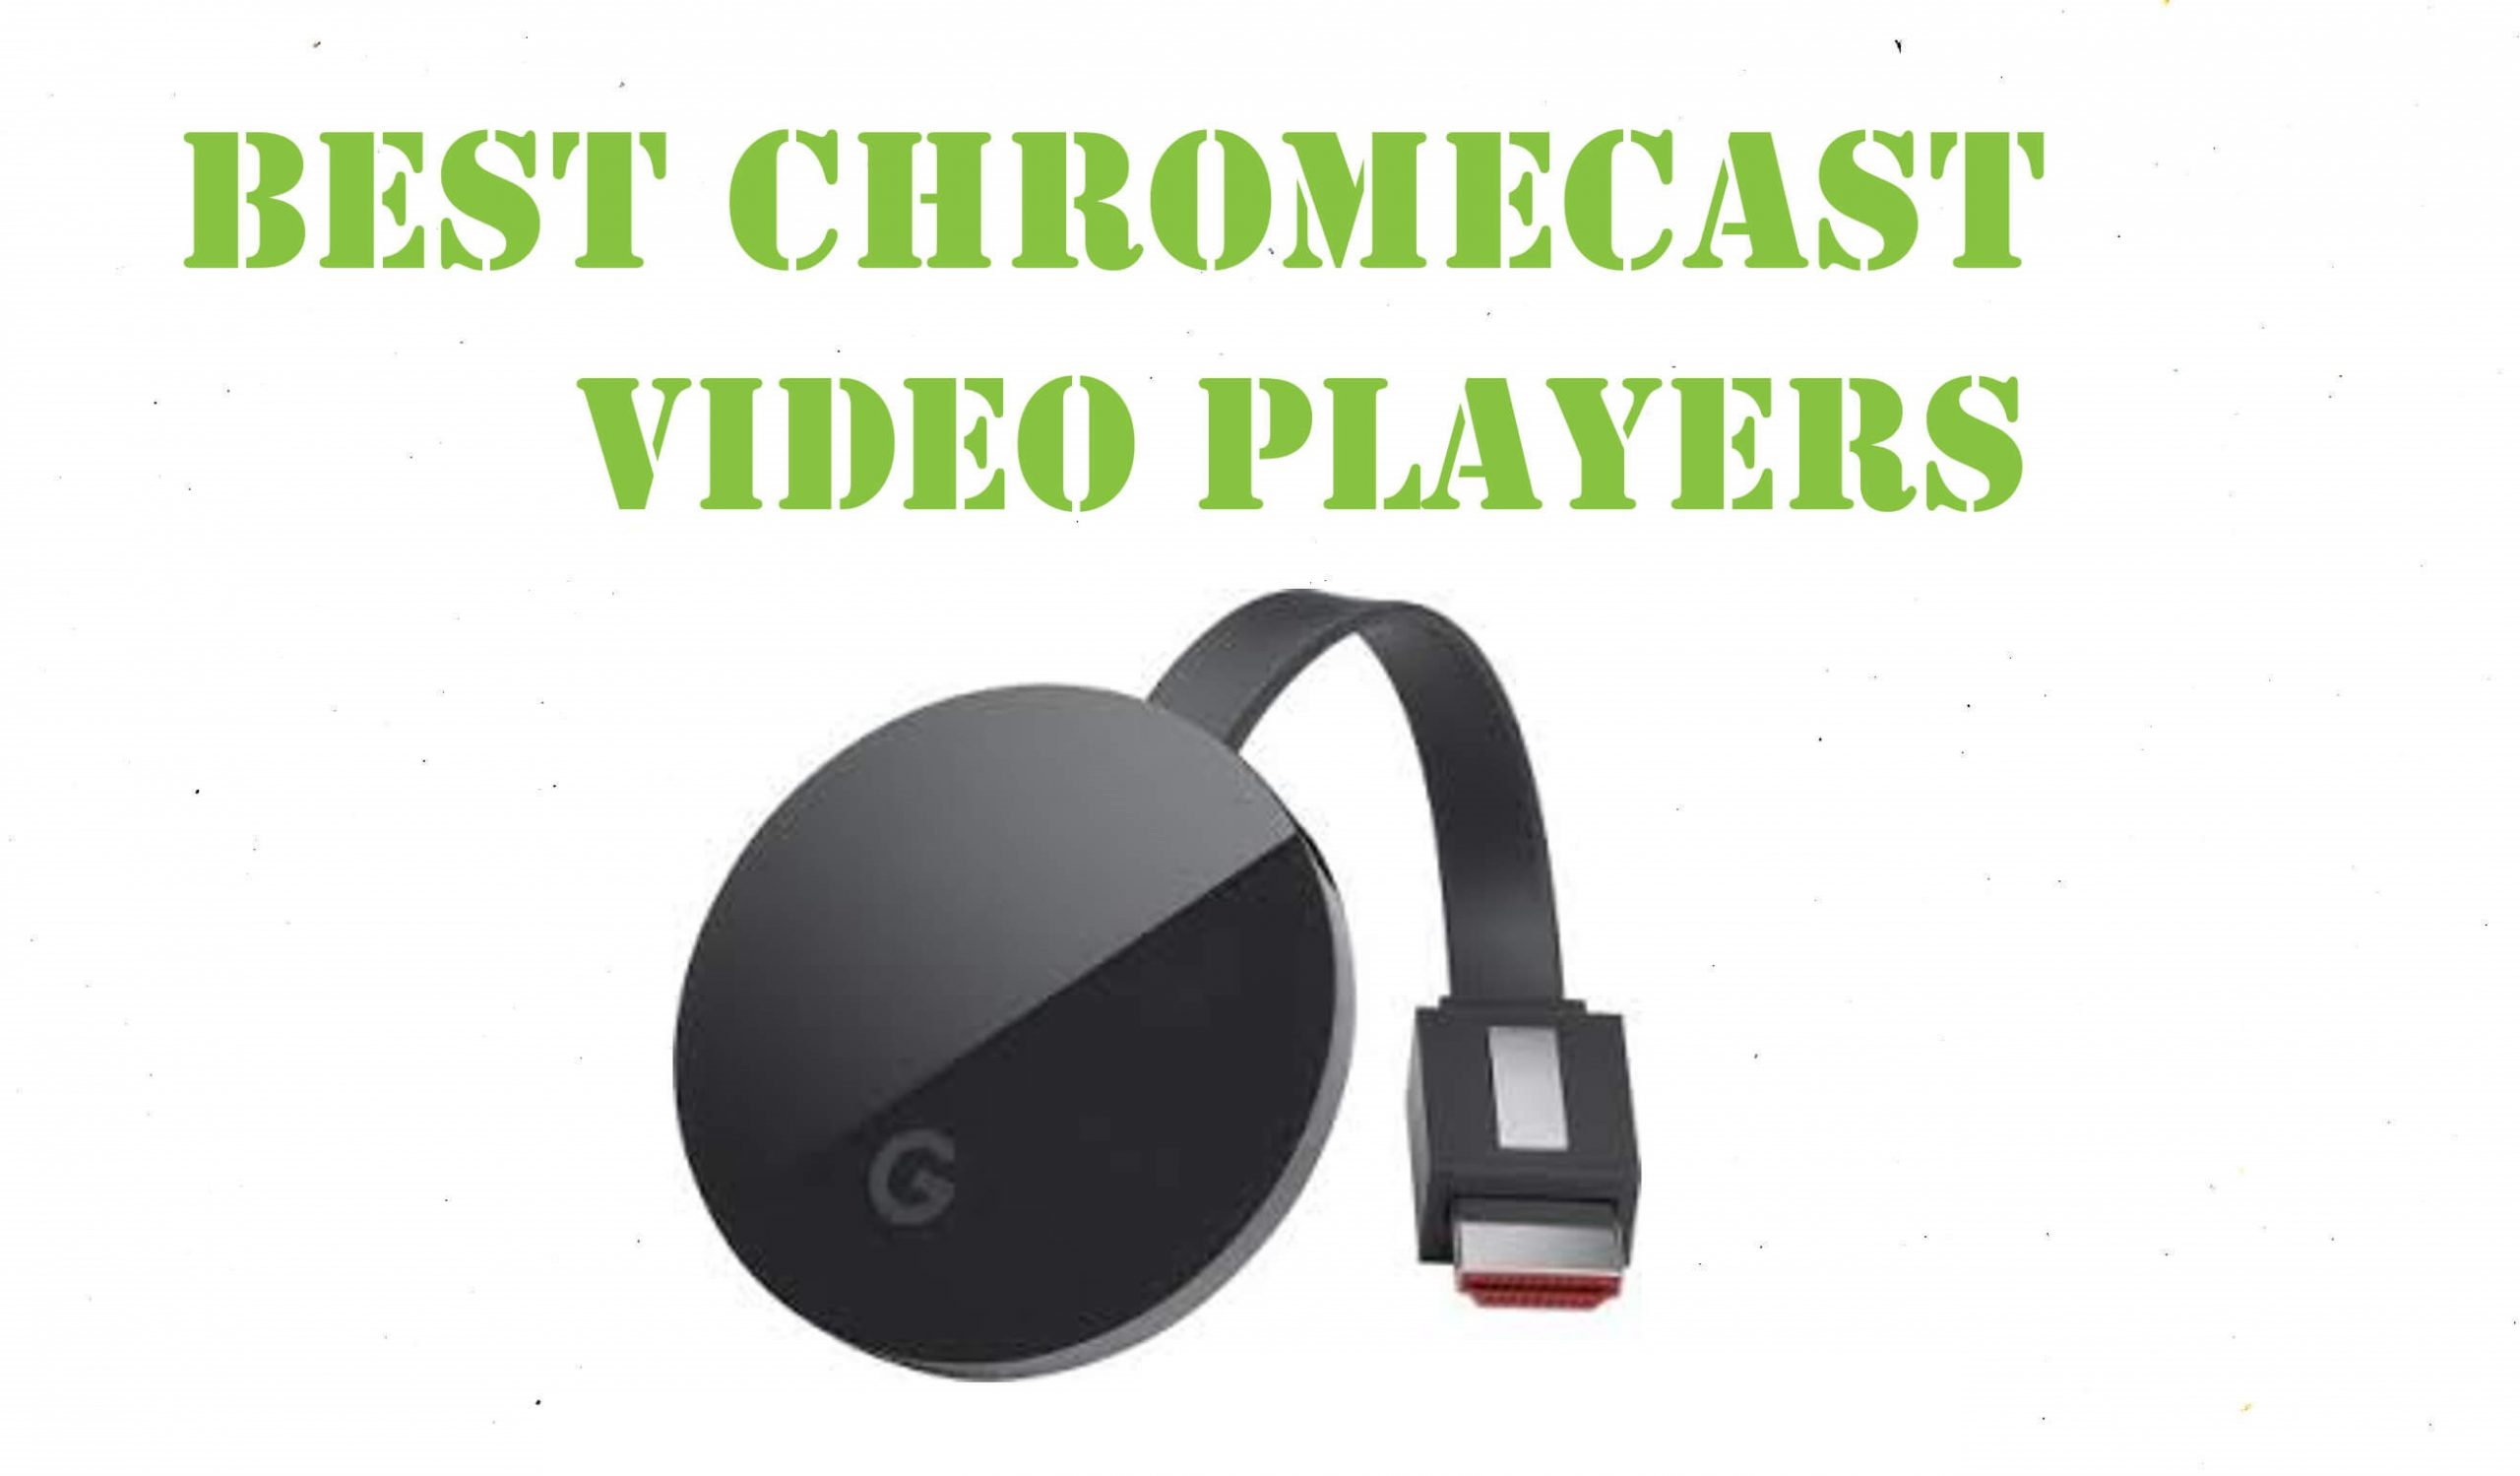 cast vlc streamer to chromecast